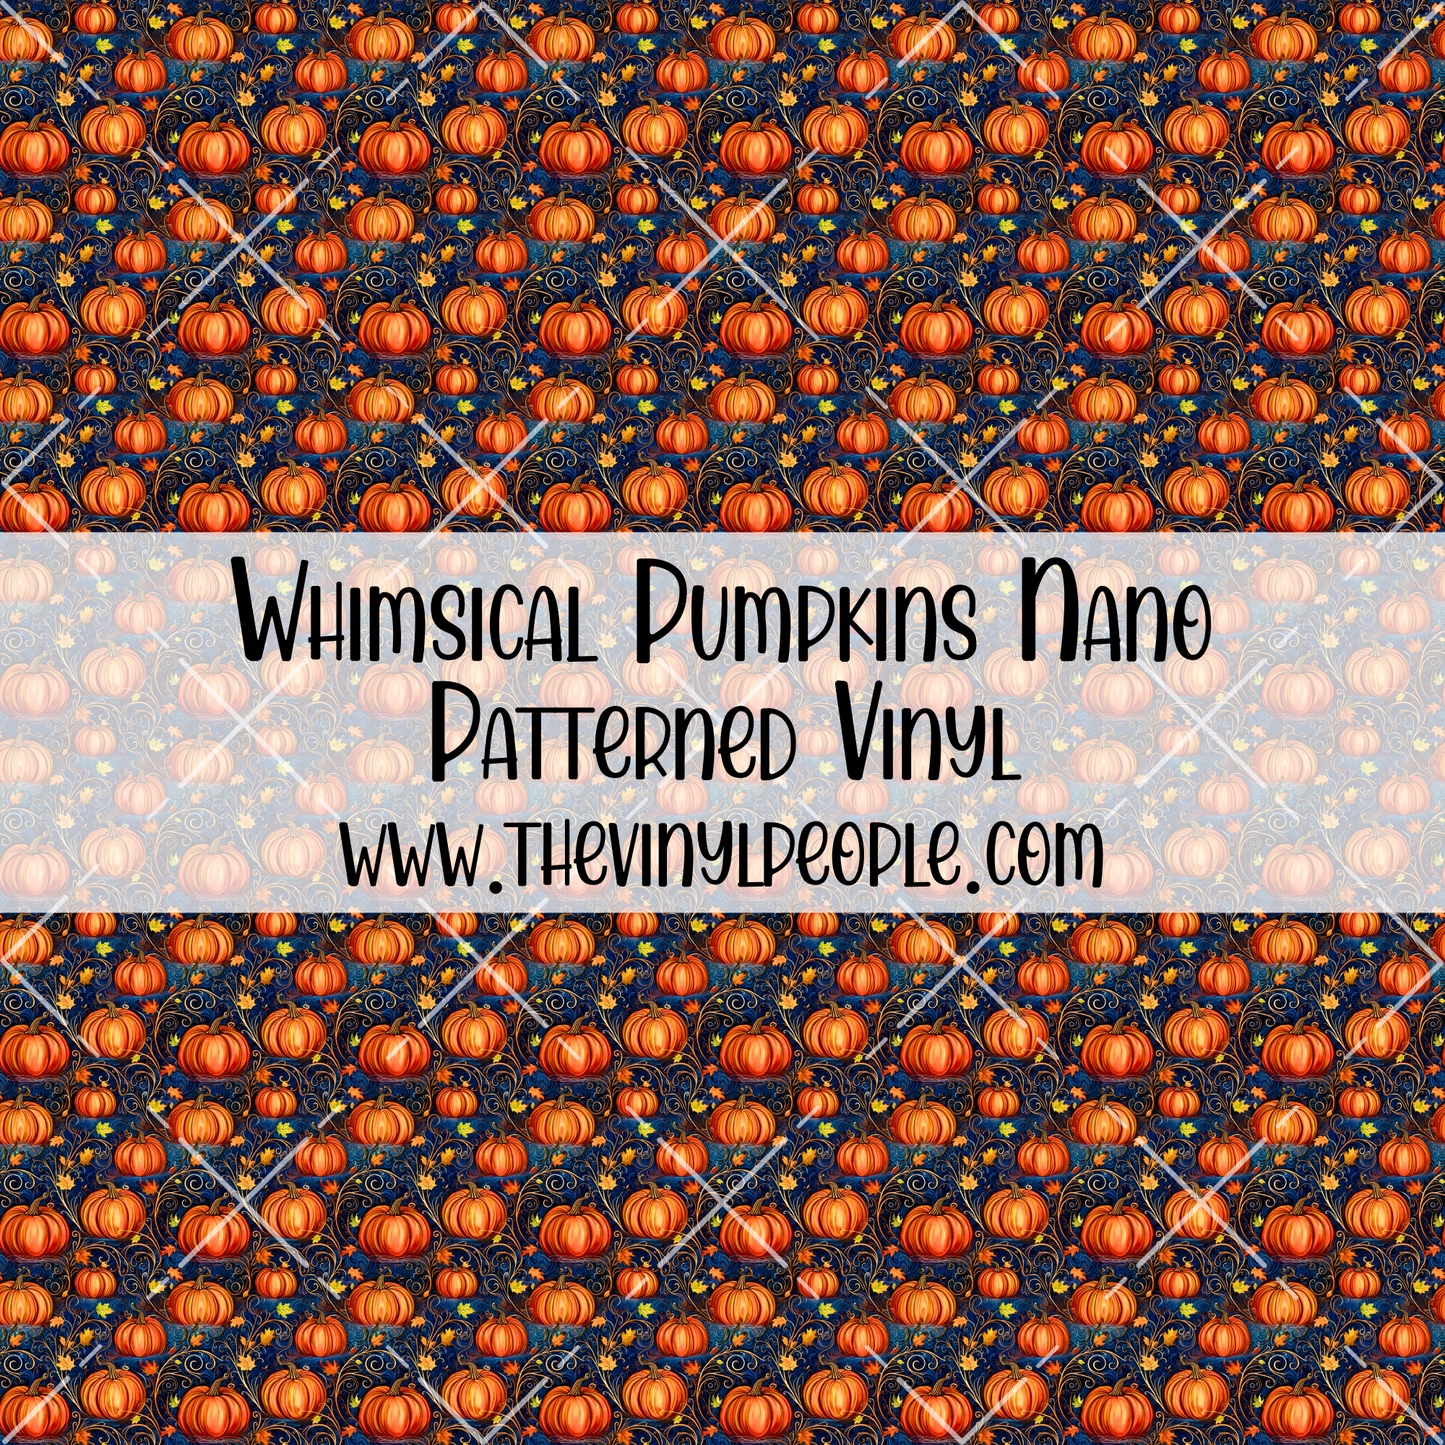 Whimsical Pumpkins Patterned Vinyl